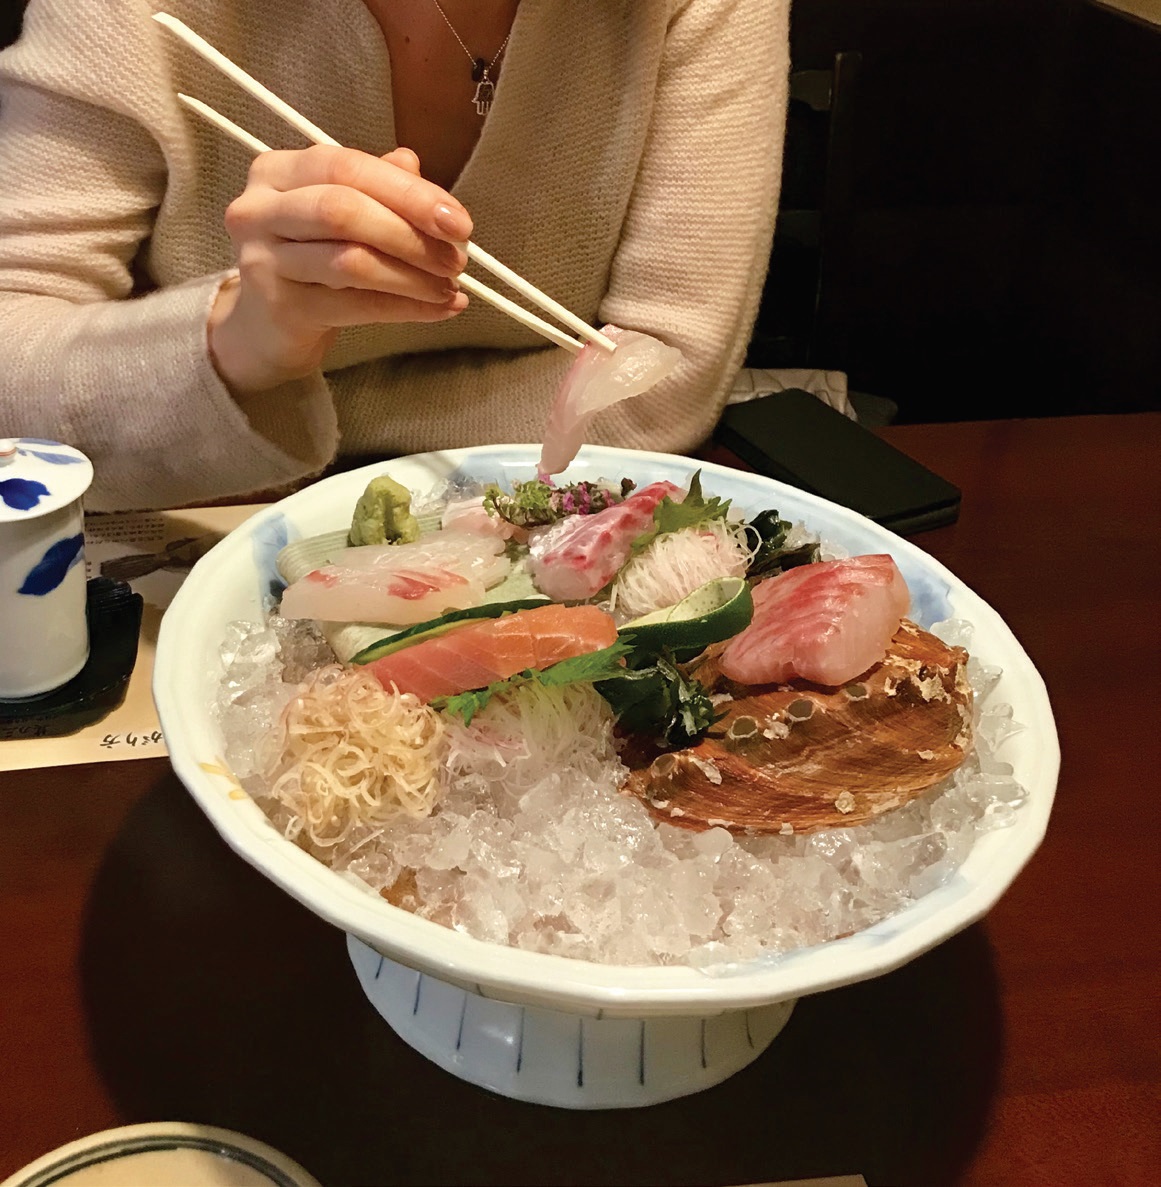 Sezoniškumas – vienas pagrindinių japoniškos virtuvės principų. Teiraukitės, kokias žuvis gaudo dabar